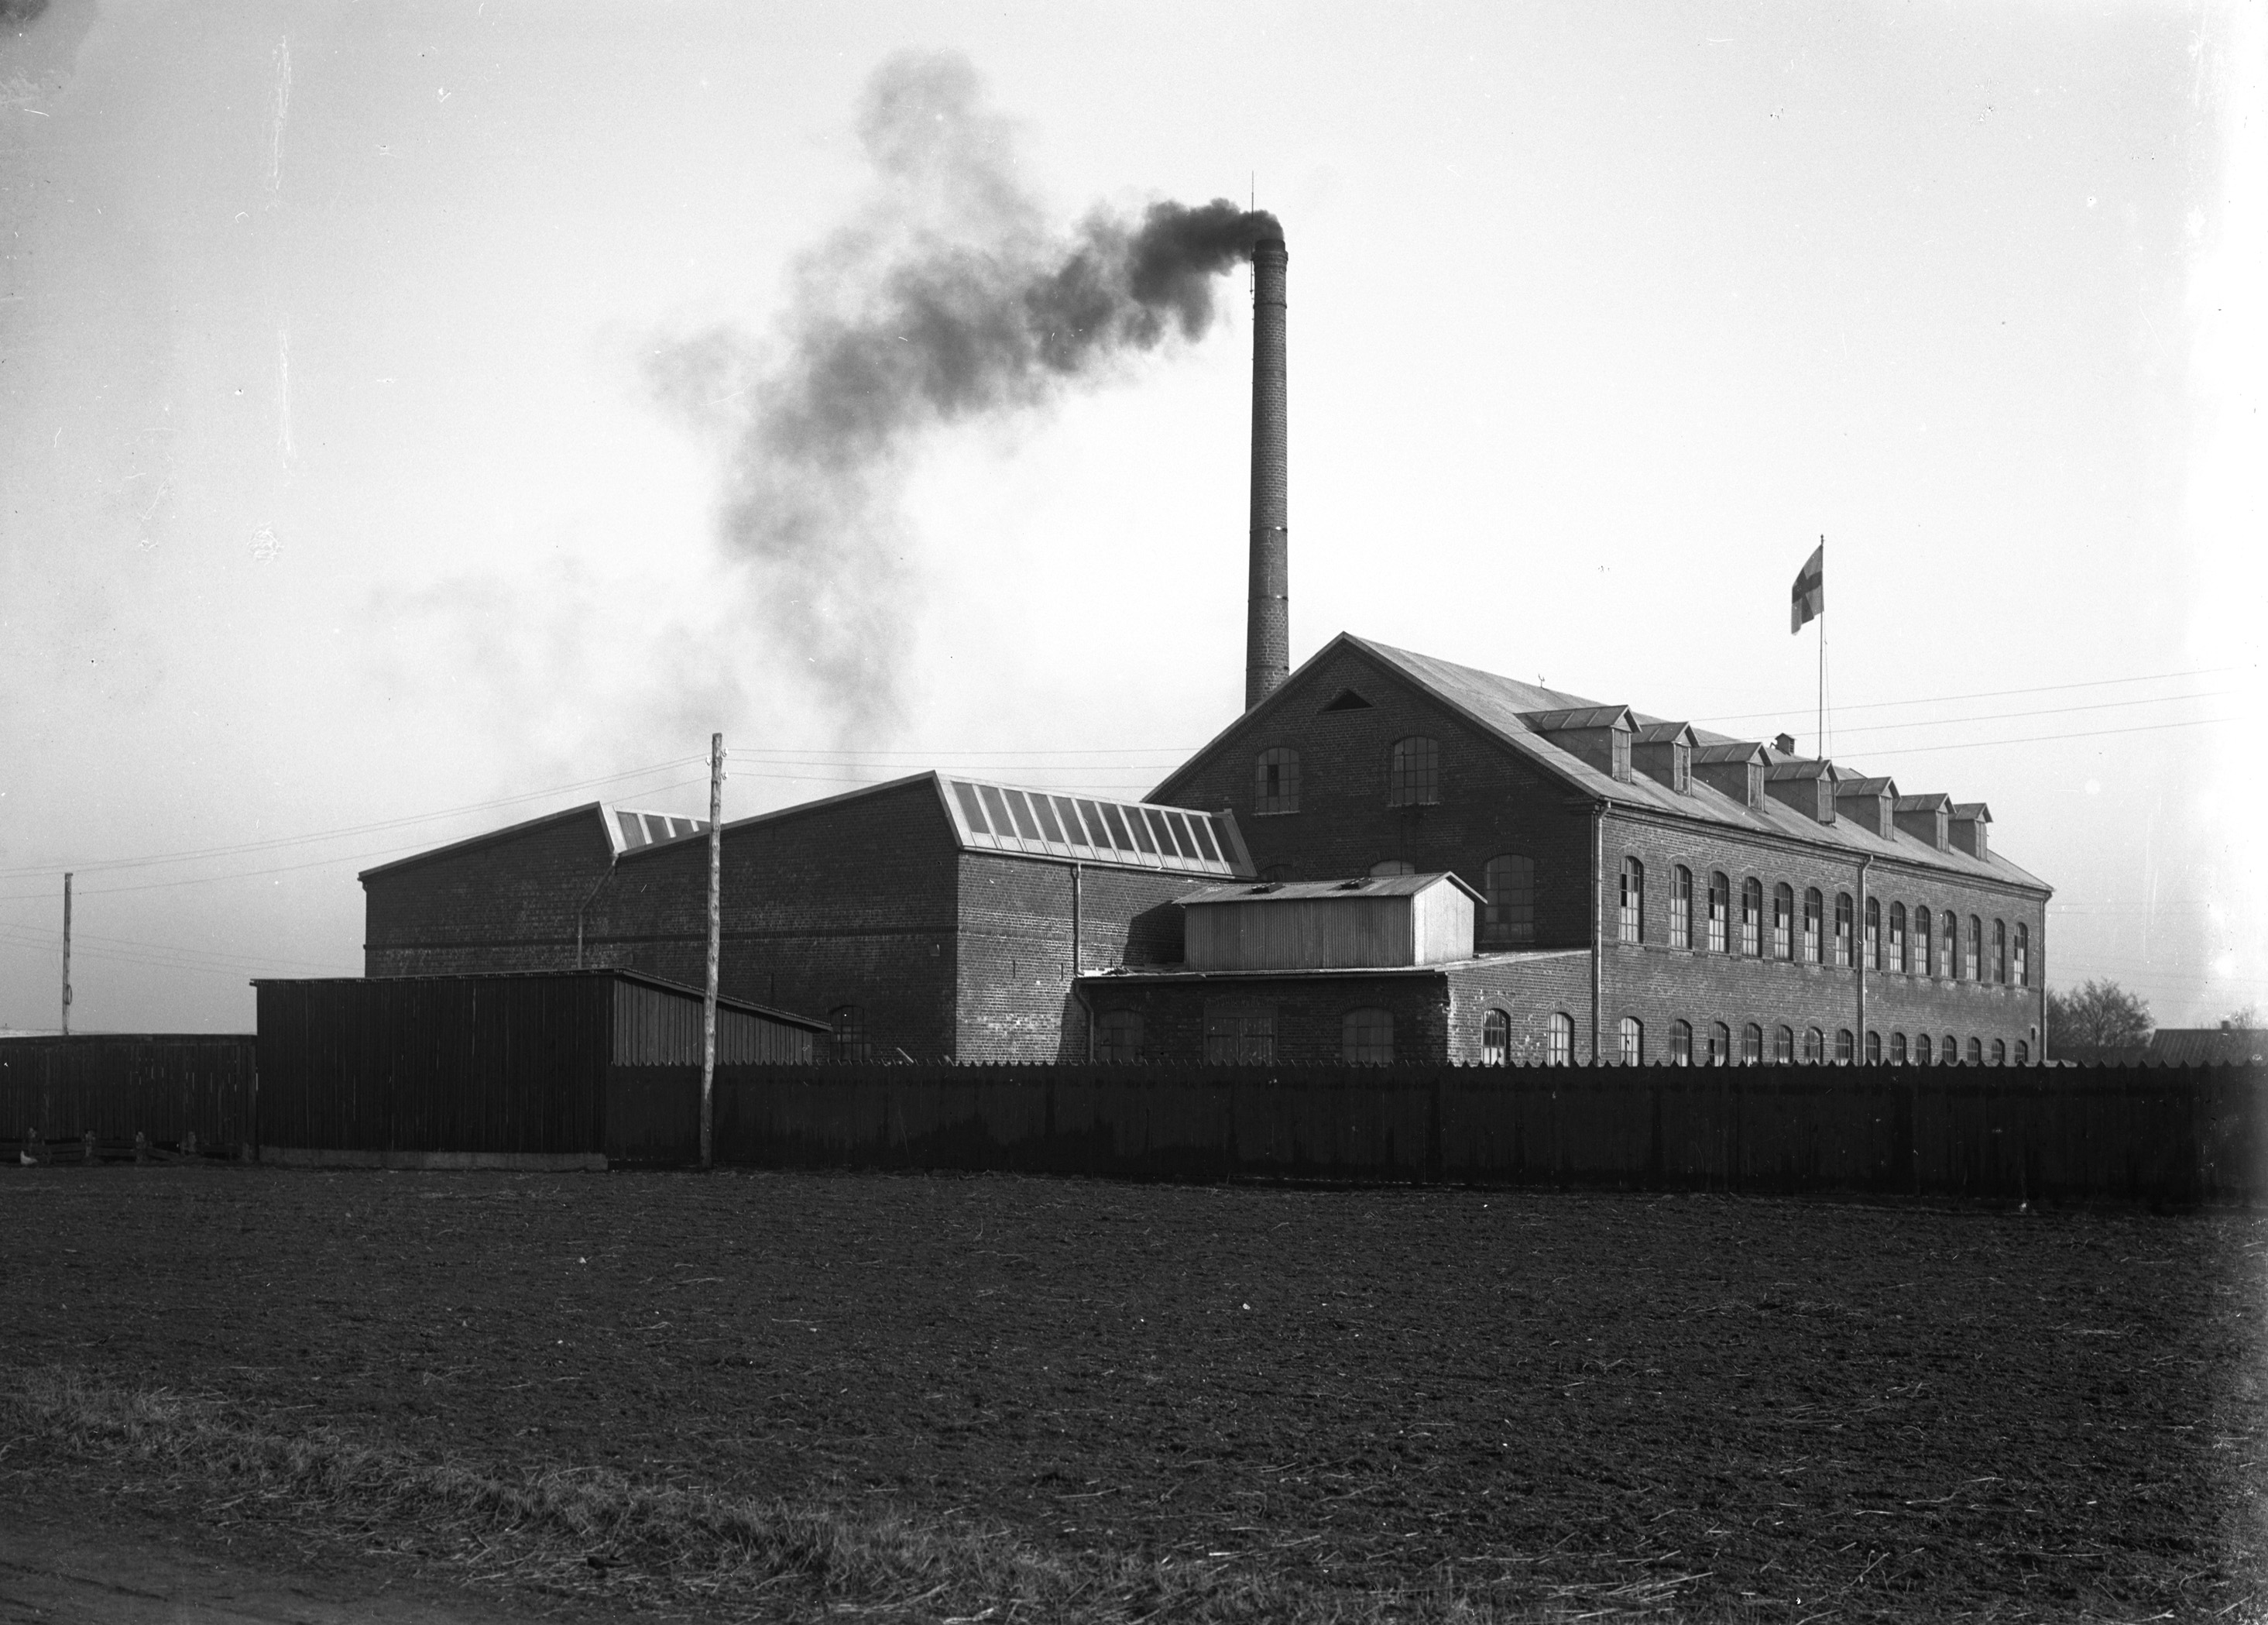 Läderfabriken i Klippan med rök kommande från den stora skorstenen